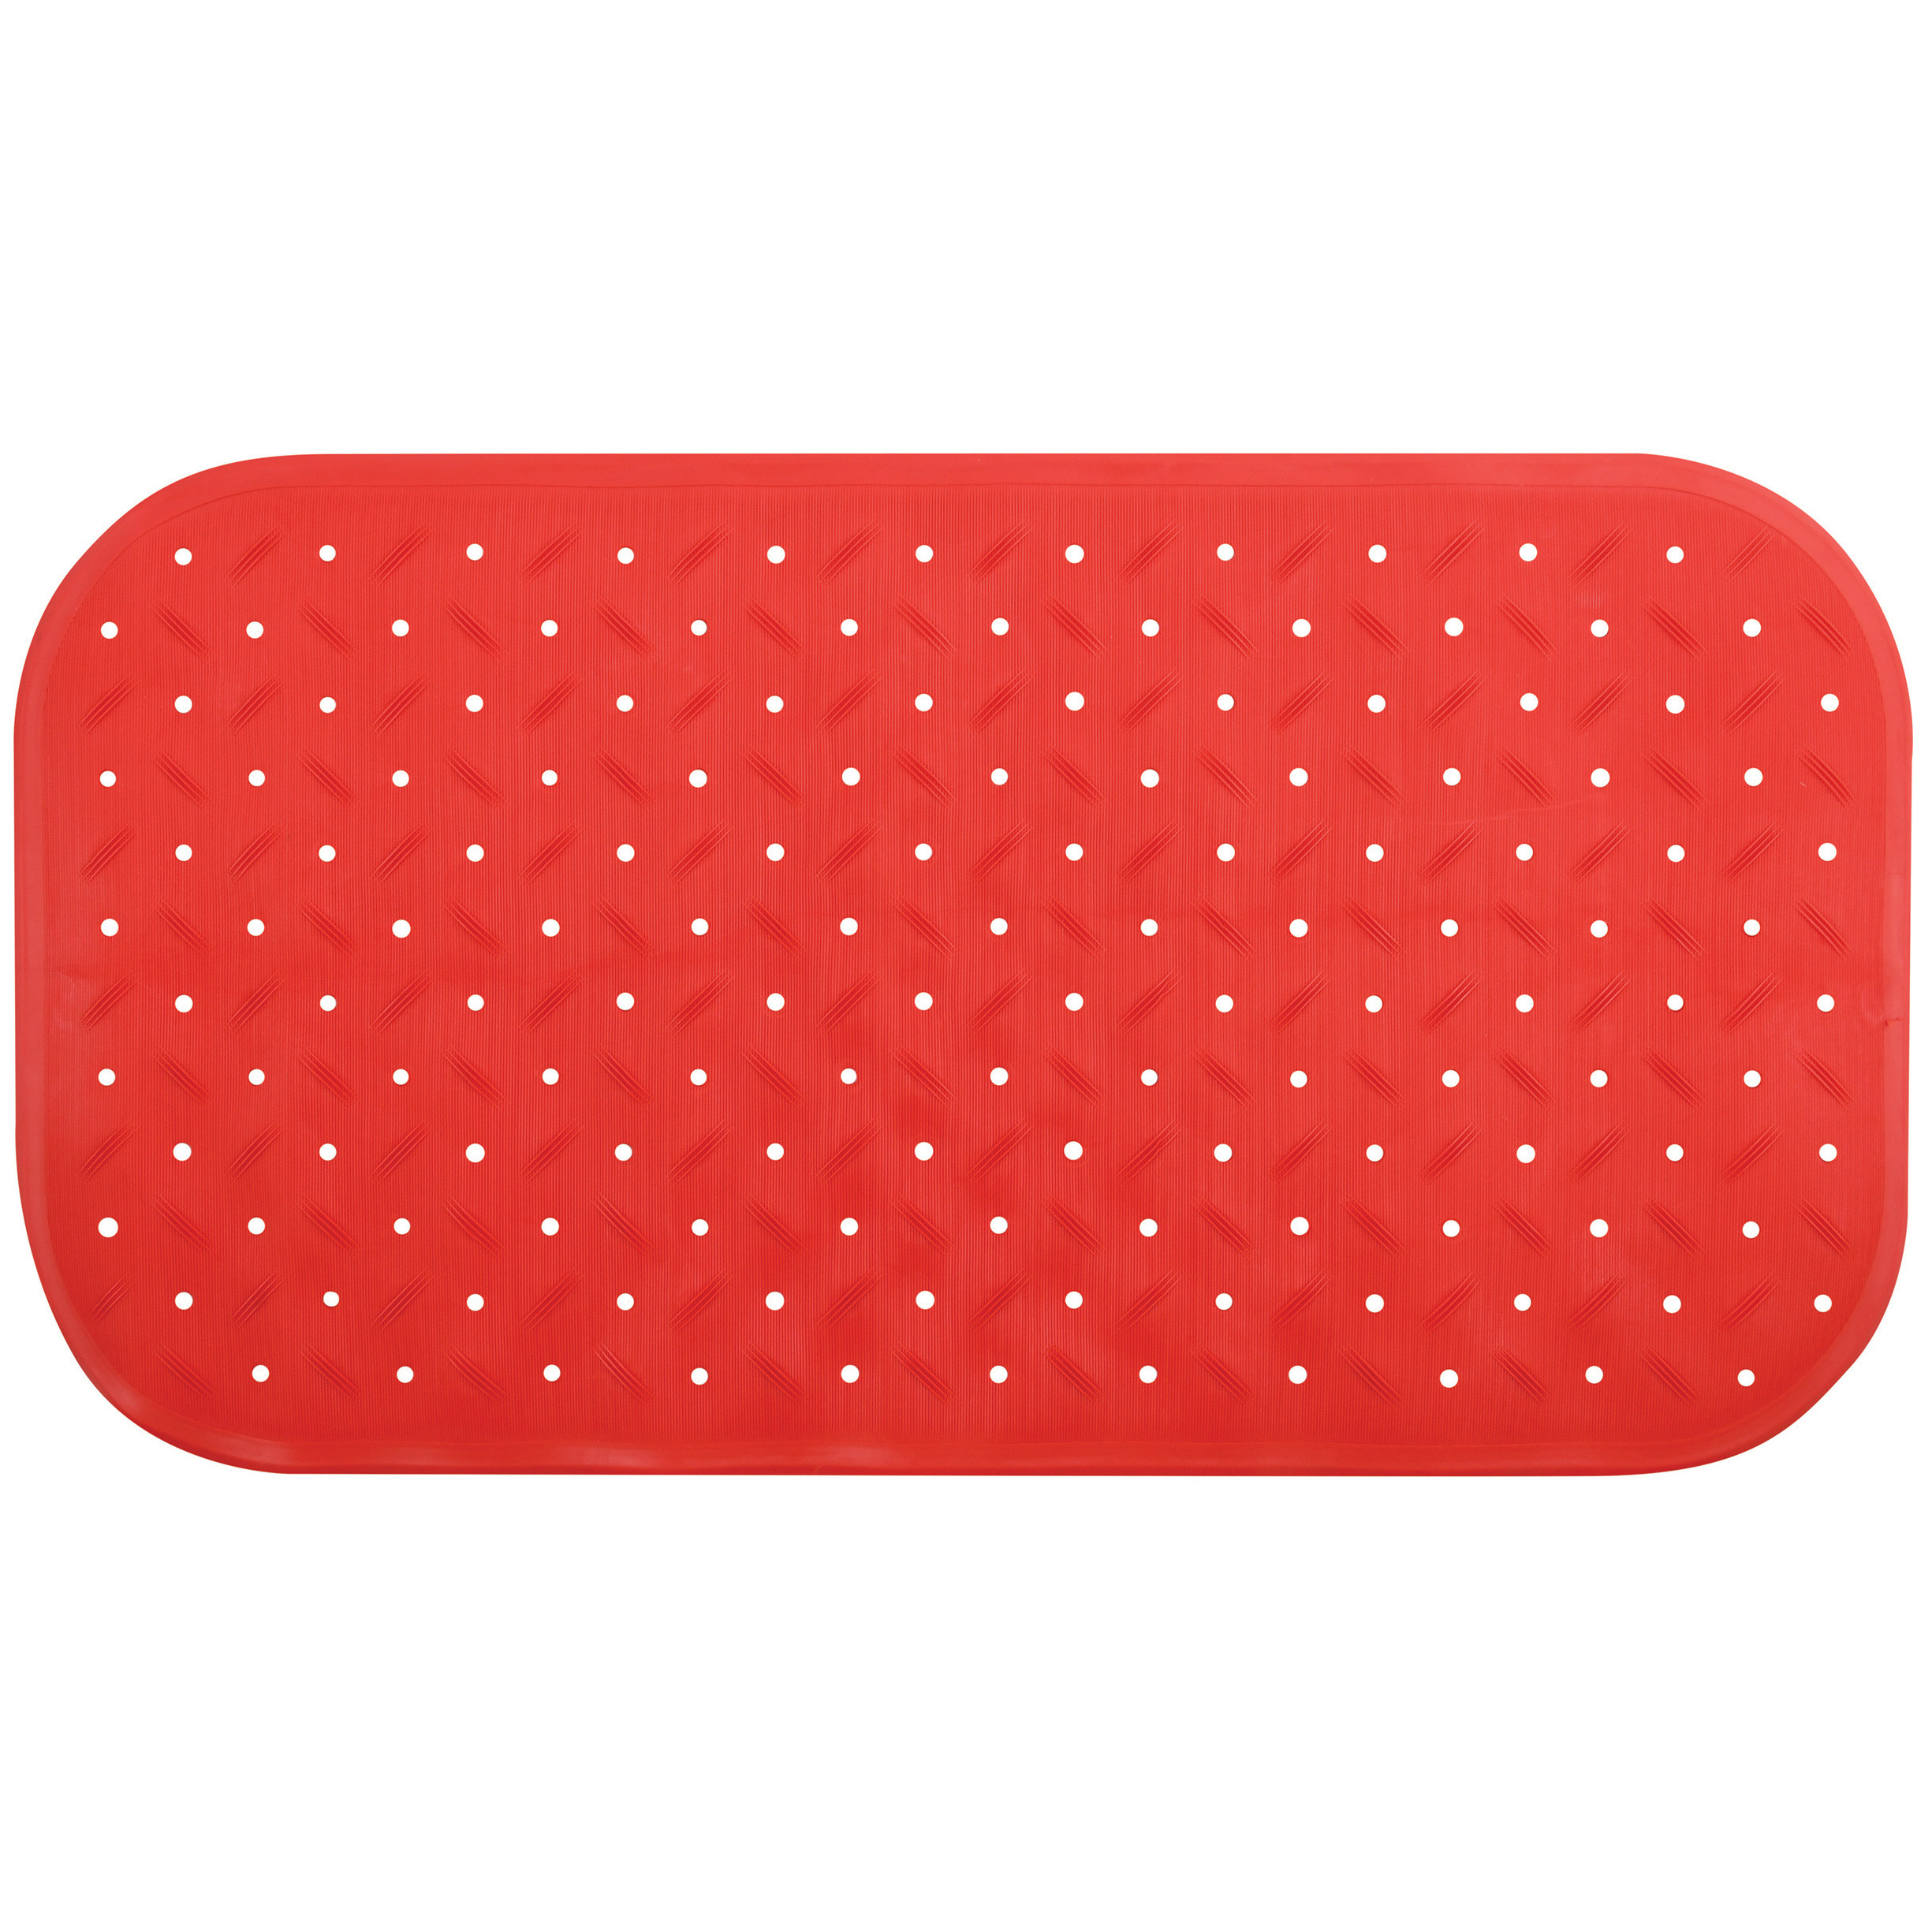 Douche-bad anti-slip mat badkamer rubber rood 36 x 76 cm rechthoek